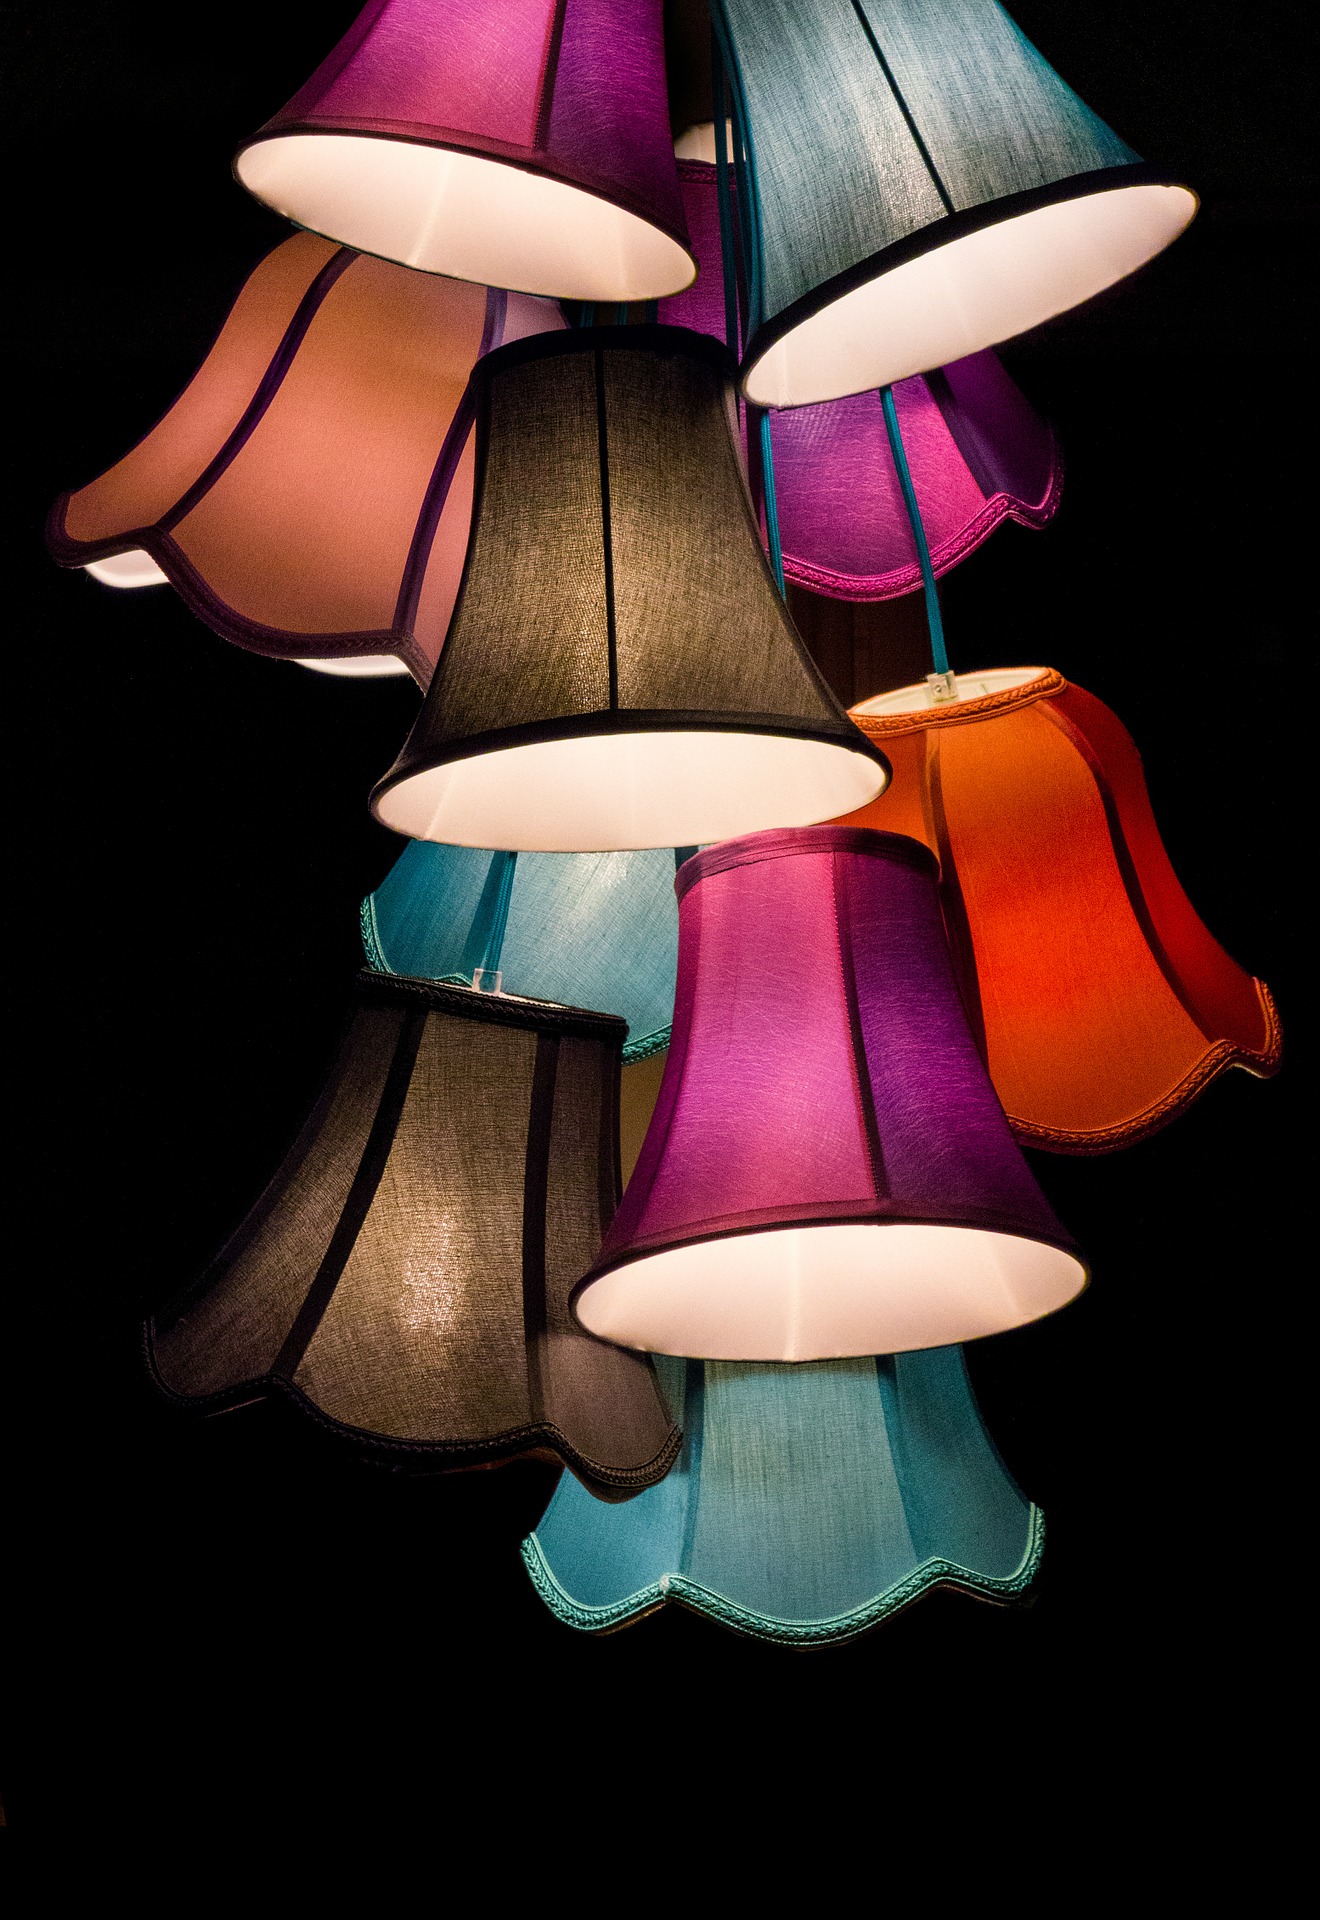 Voor en nadelen gekleurde lampen in huis.